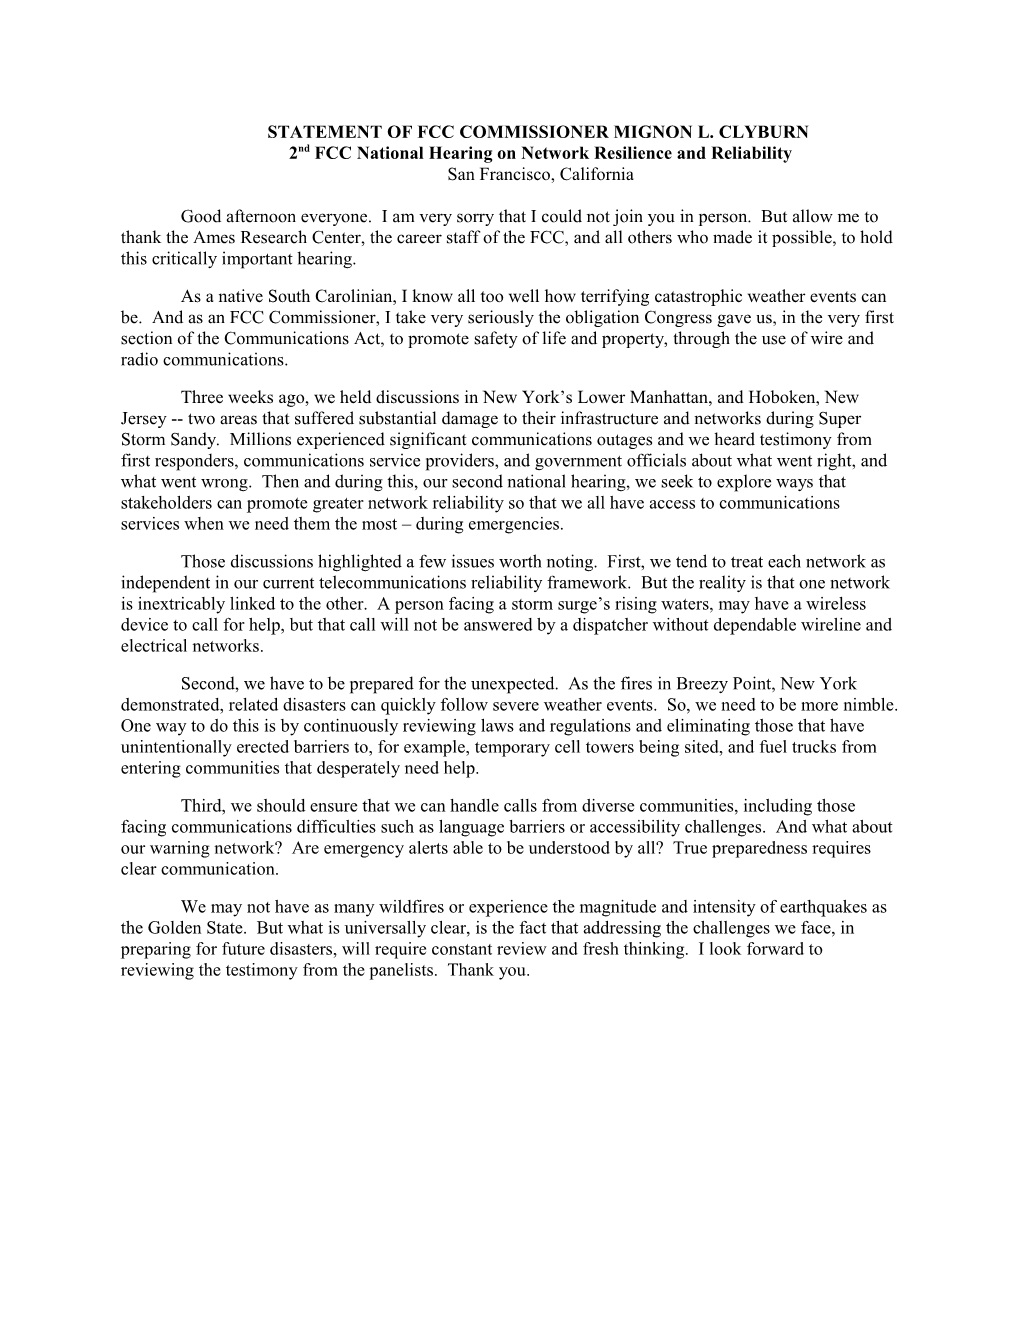 Statement of Fcc Commissioner Mignon L. Clyburn